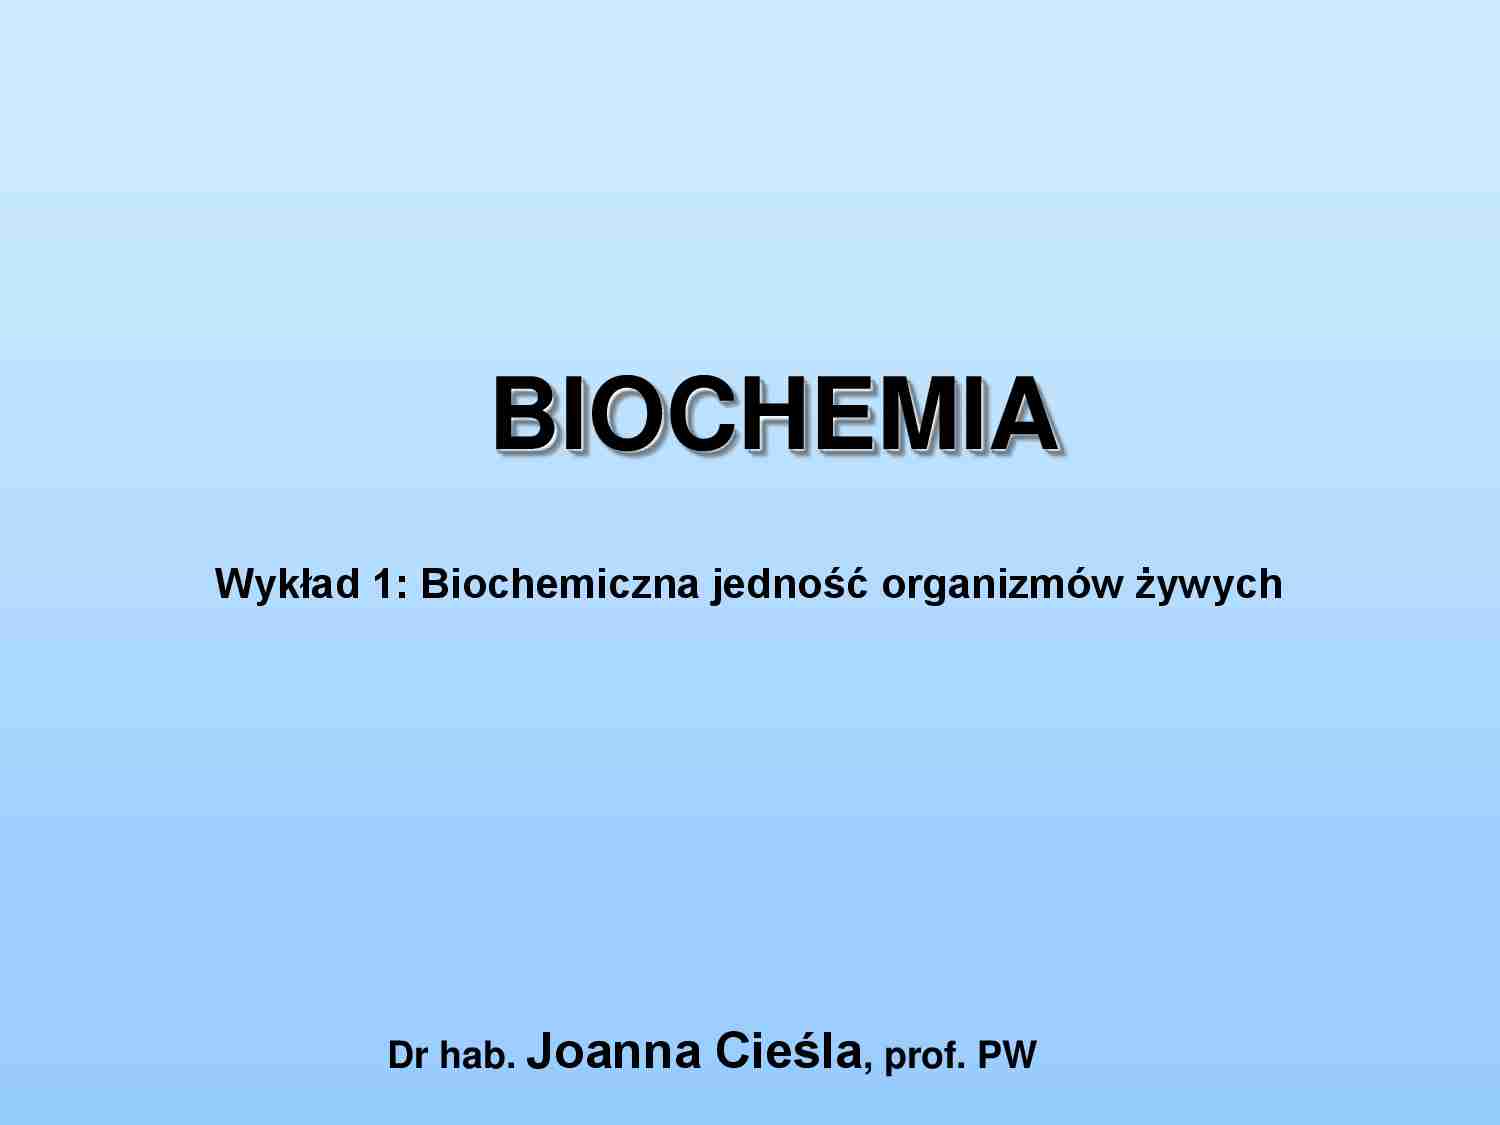 Biochemiczna jedność organizmów żywych-wykład - strona 1